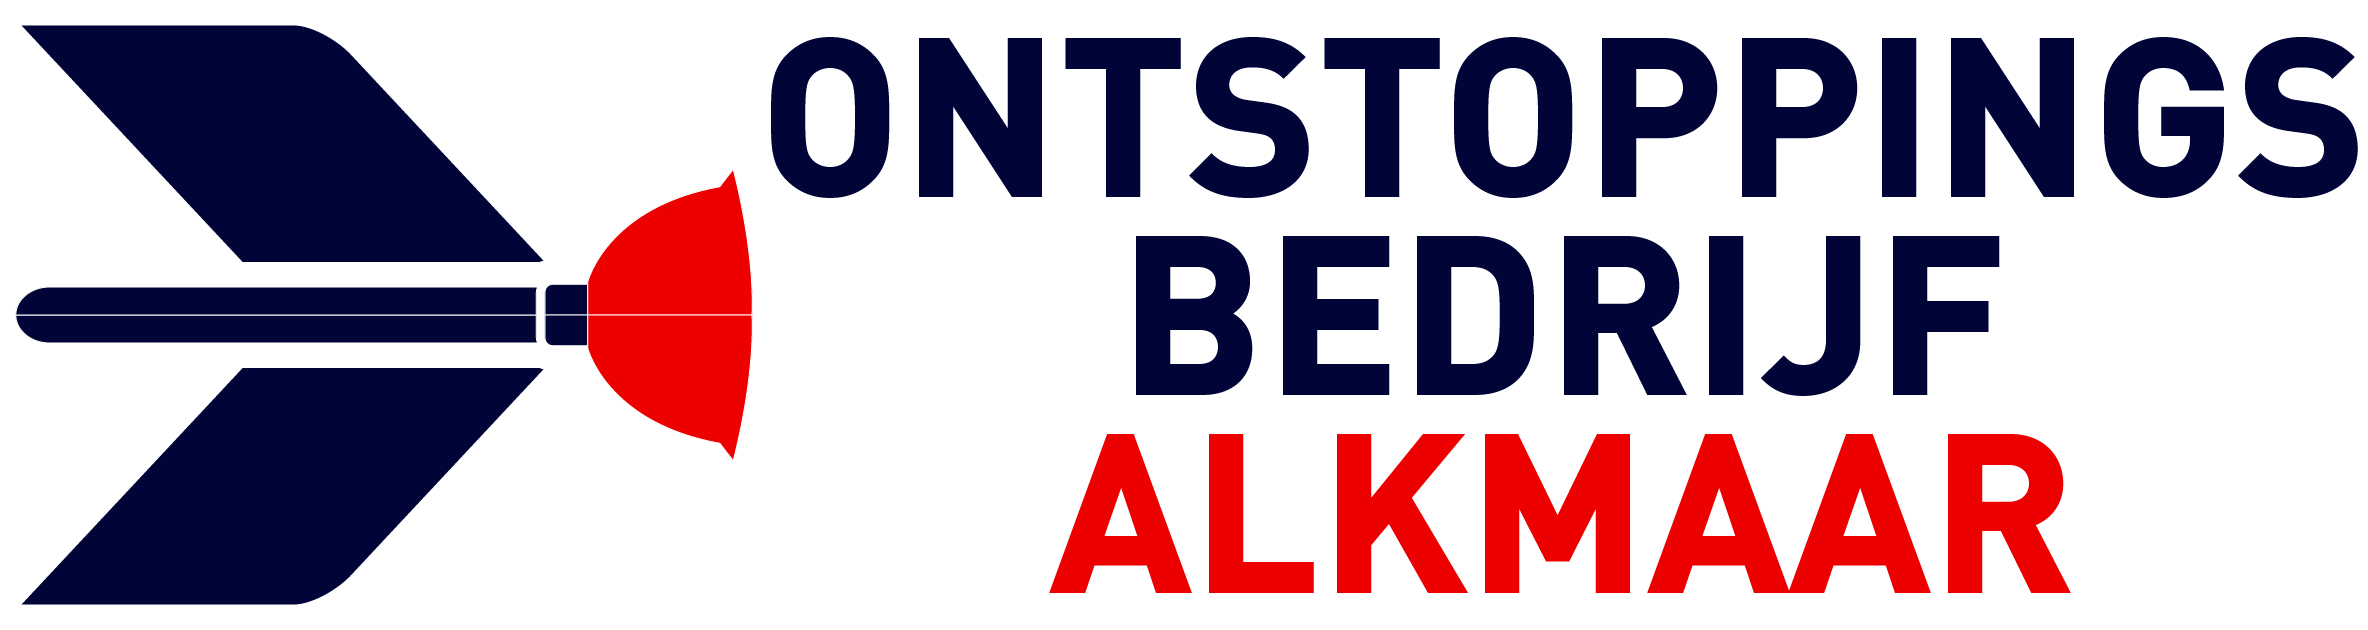 Ontstoppingsbedrijf Alkmaar logo